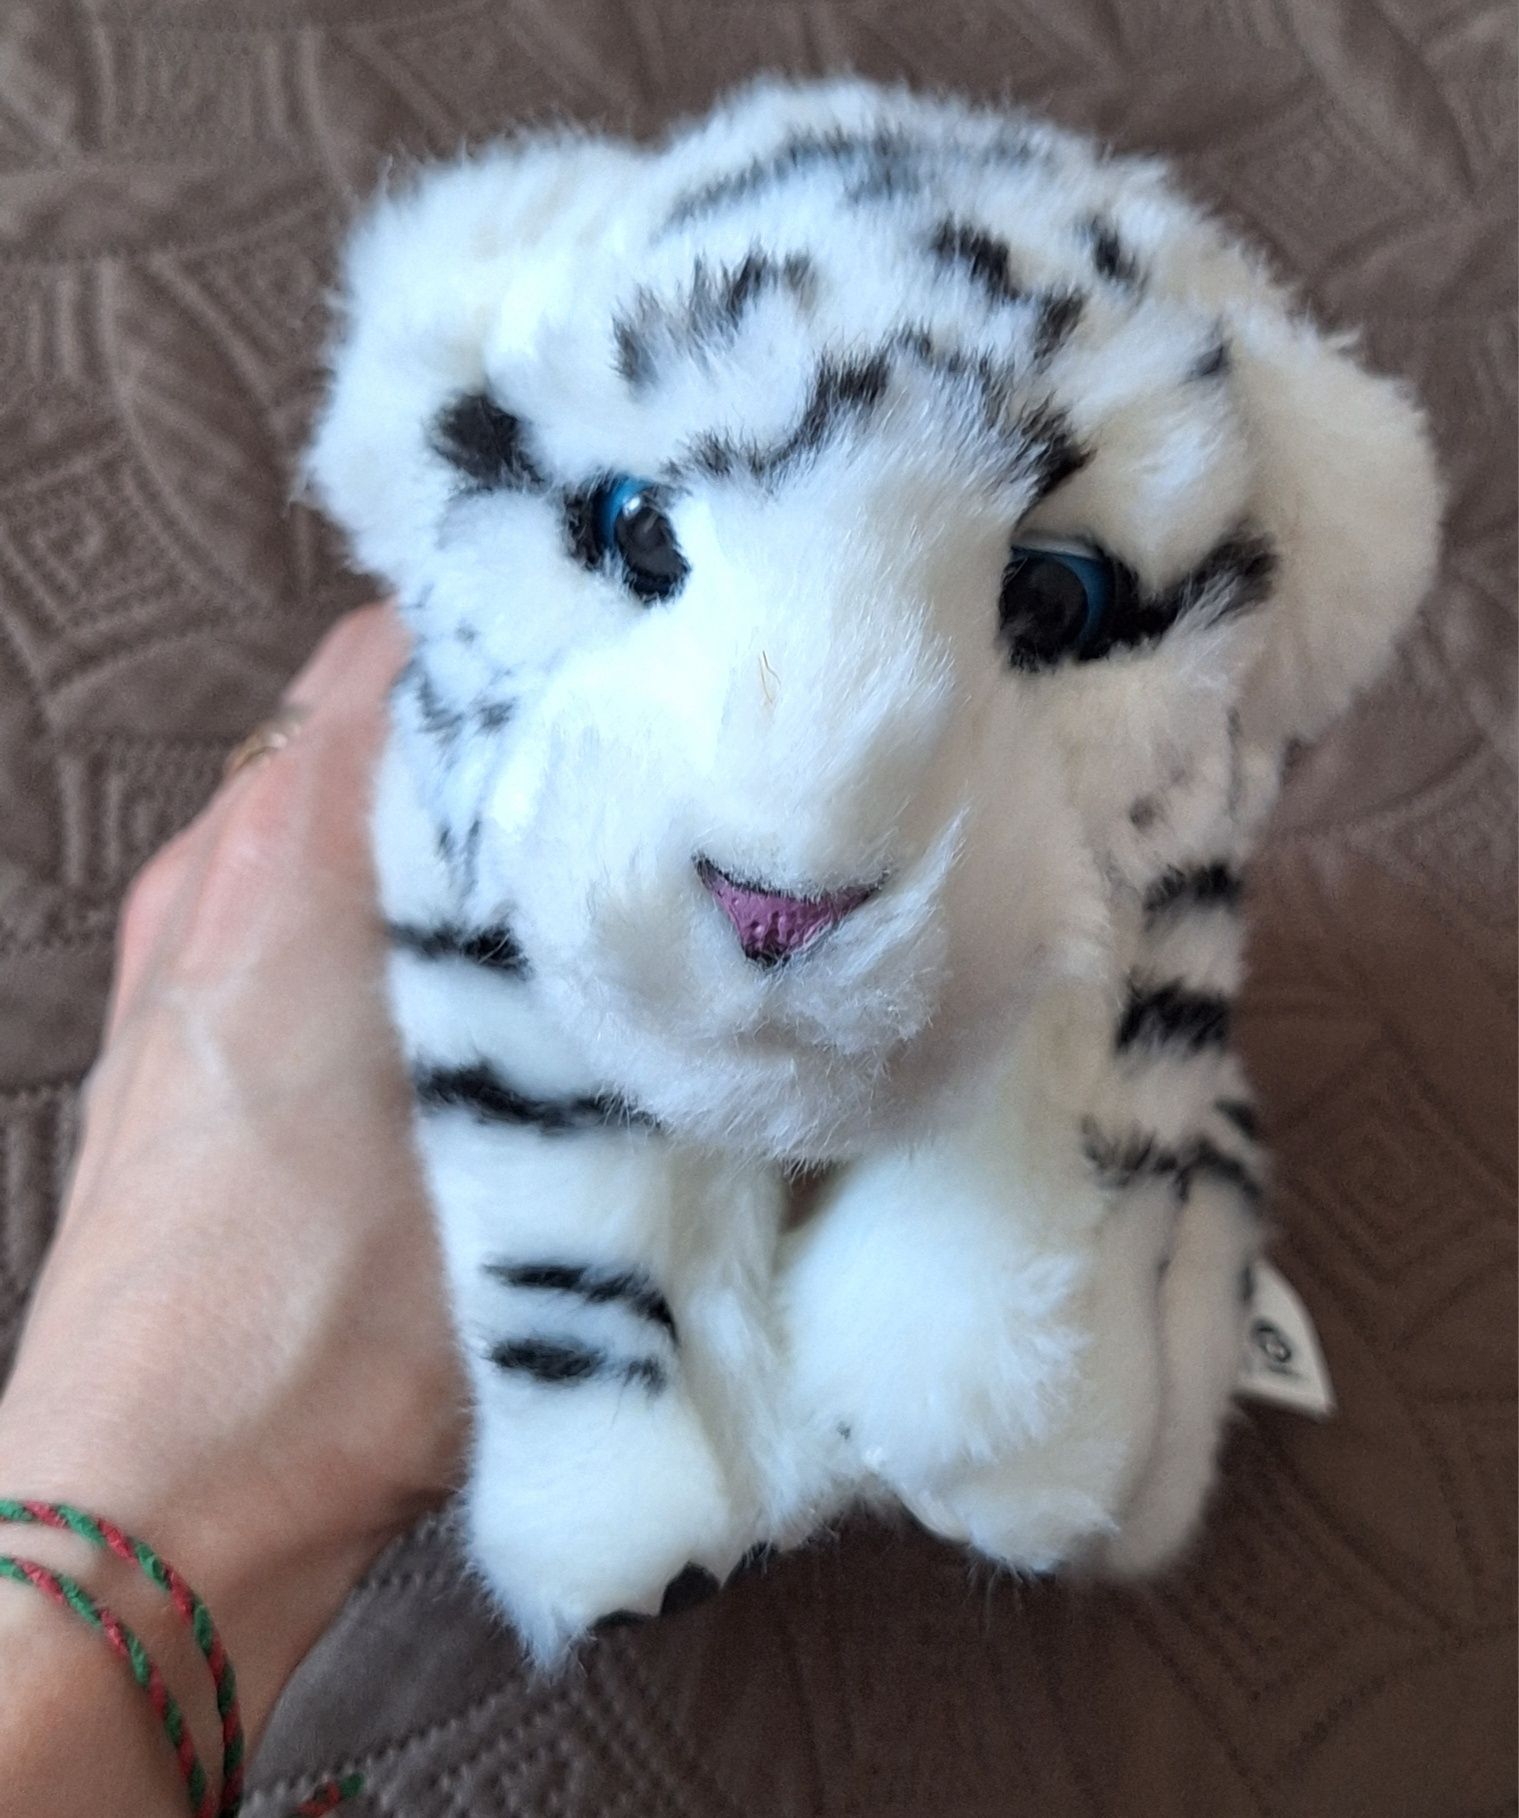 WowWee Alive інтерактивний білий тигра.